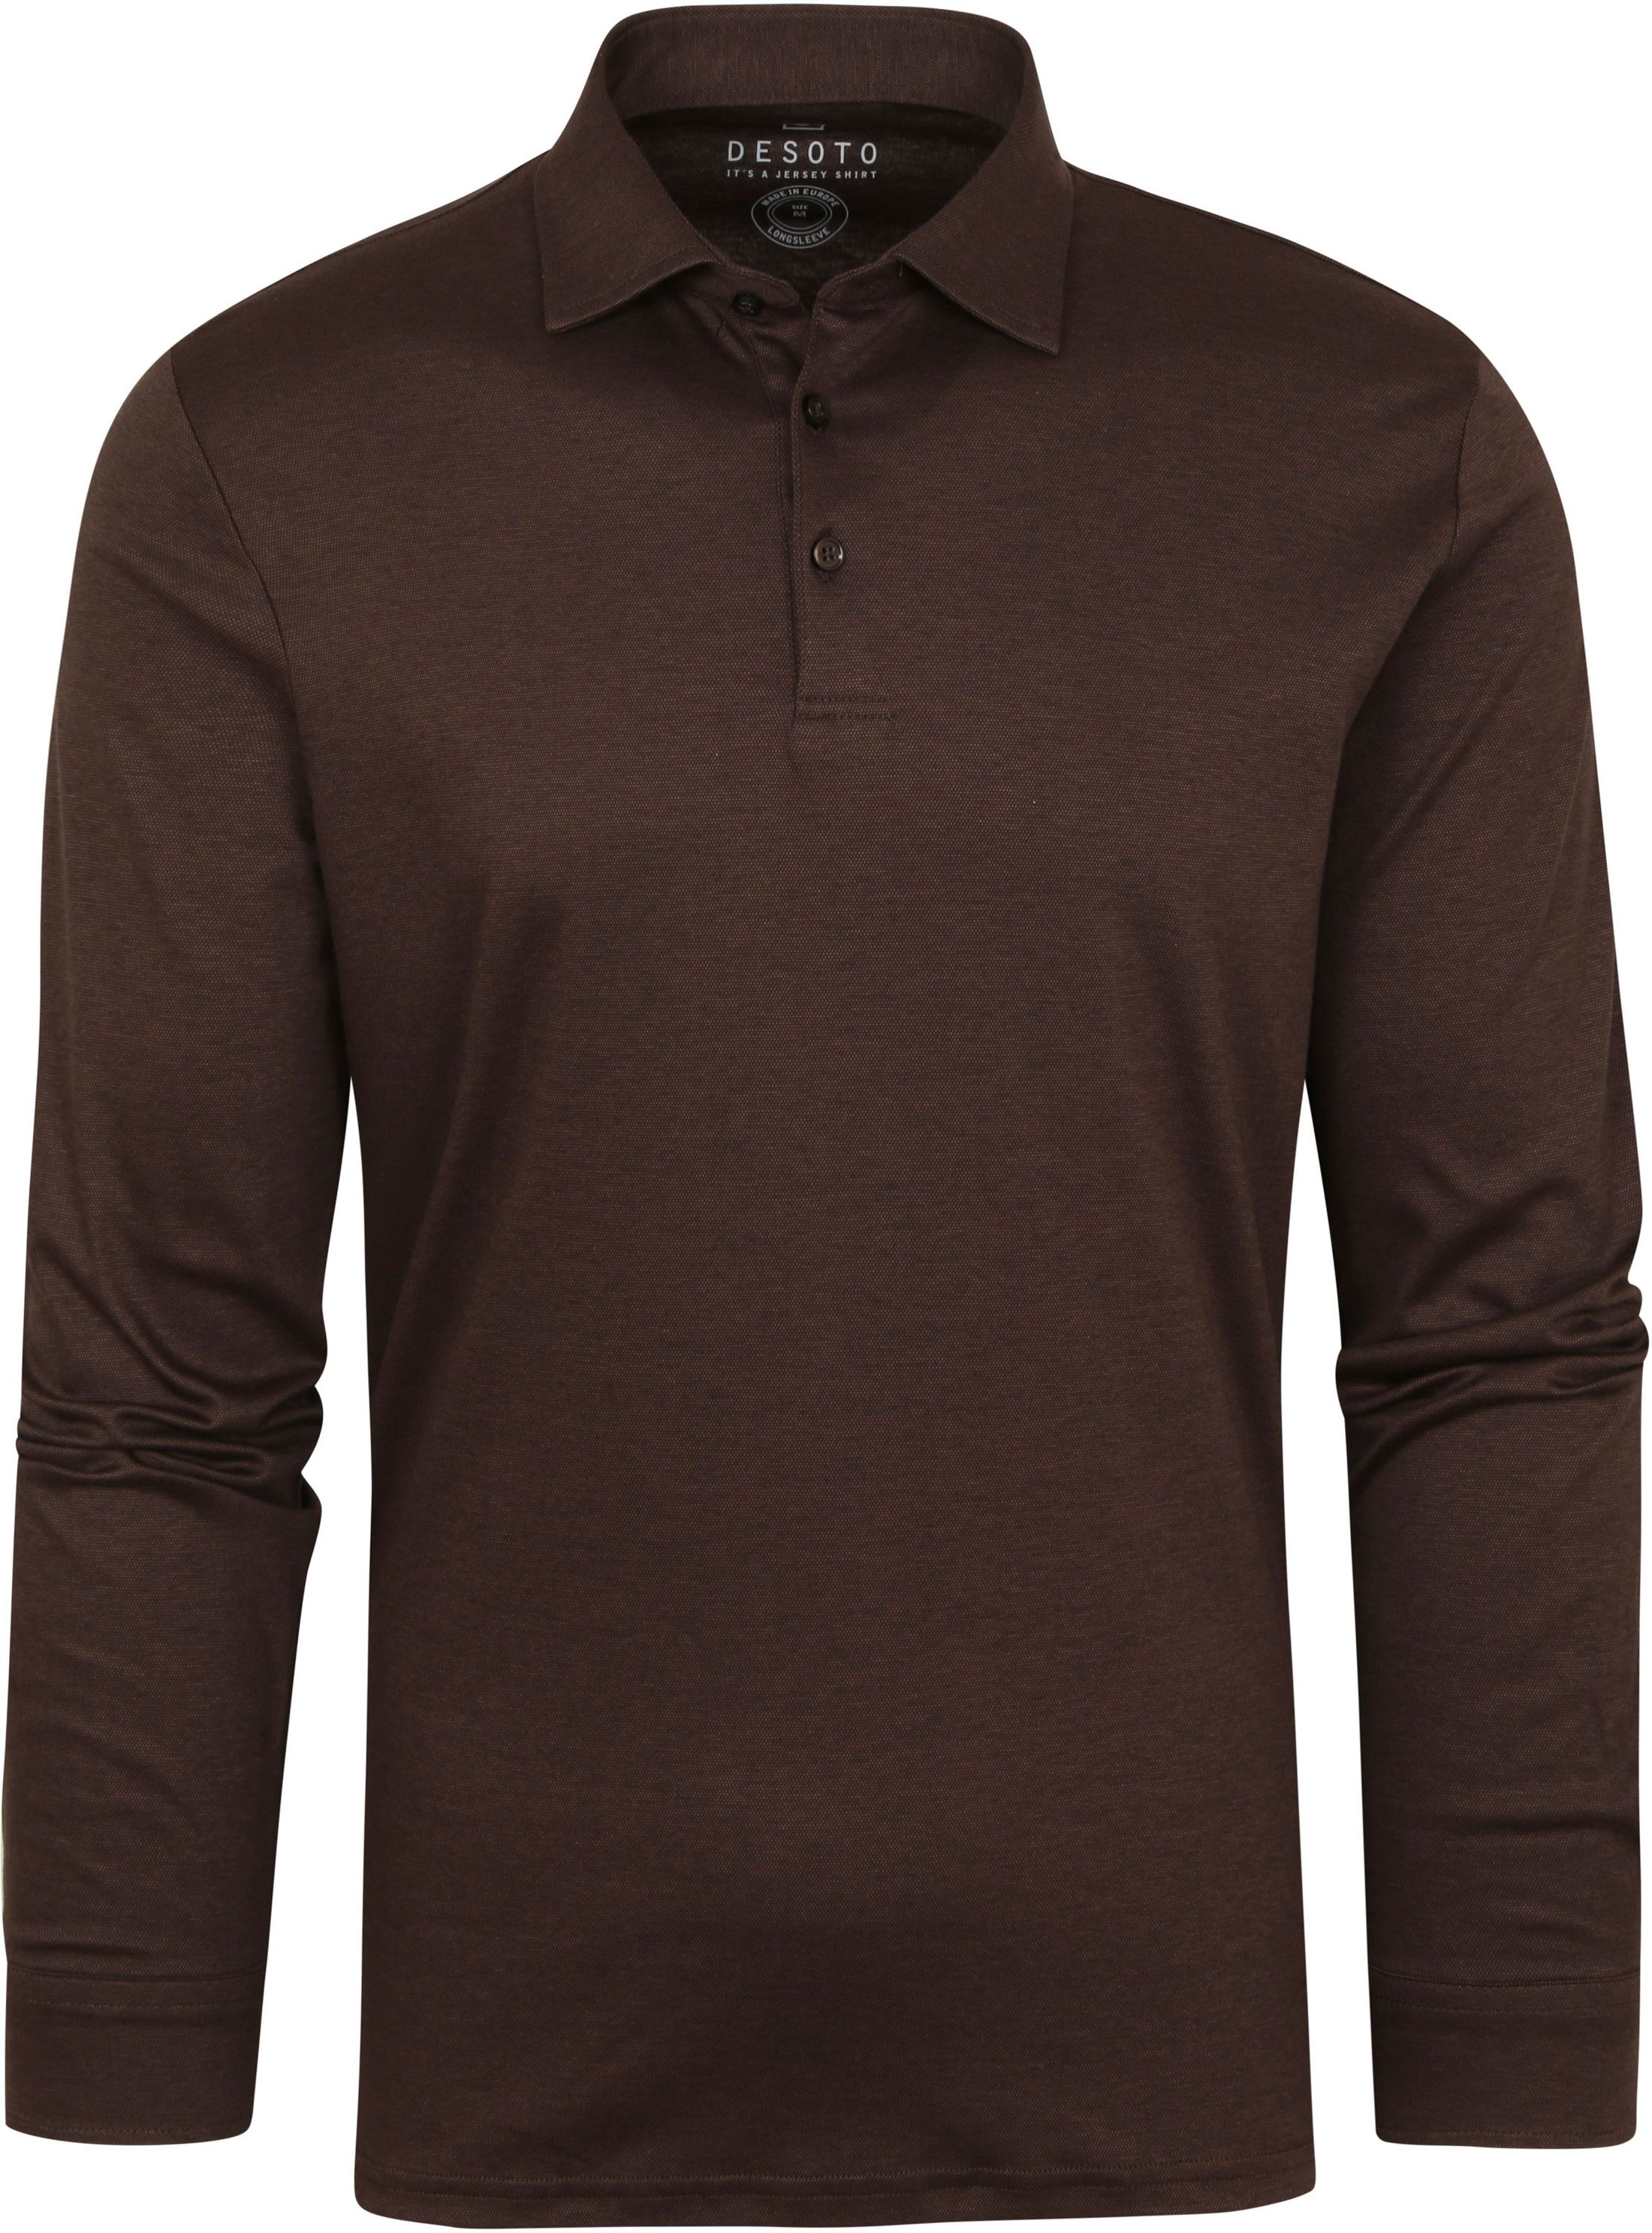 Desoto Polo Shirt LS Brown size 3XL